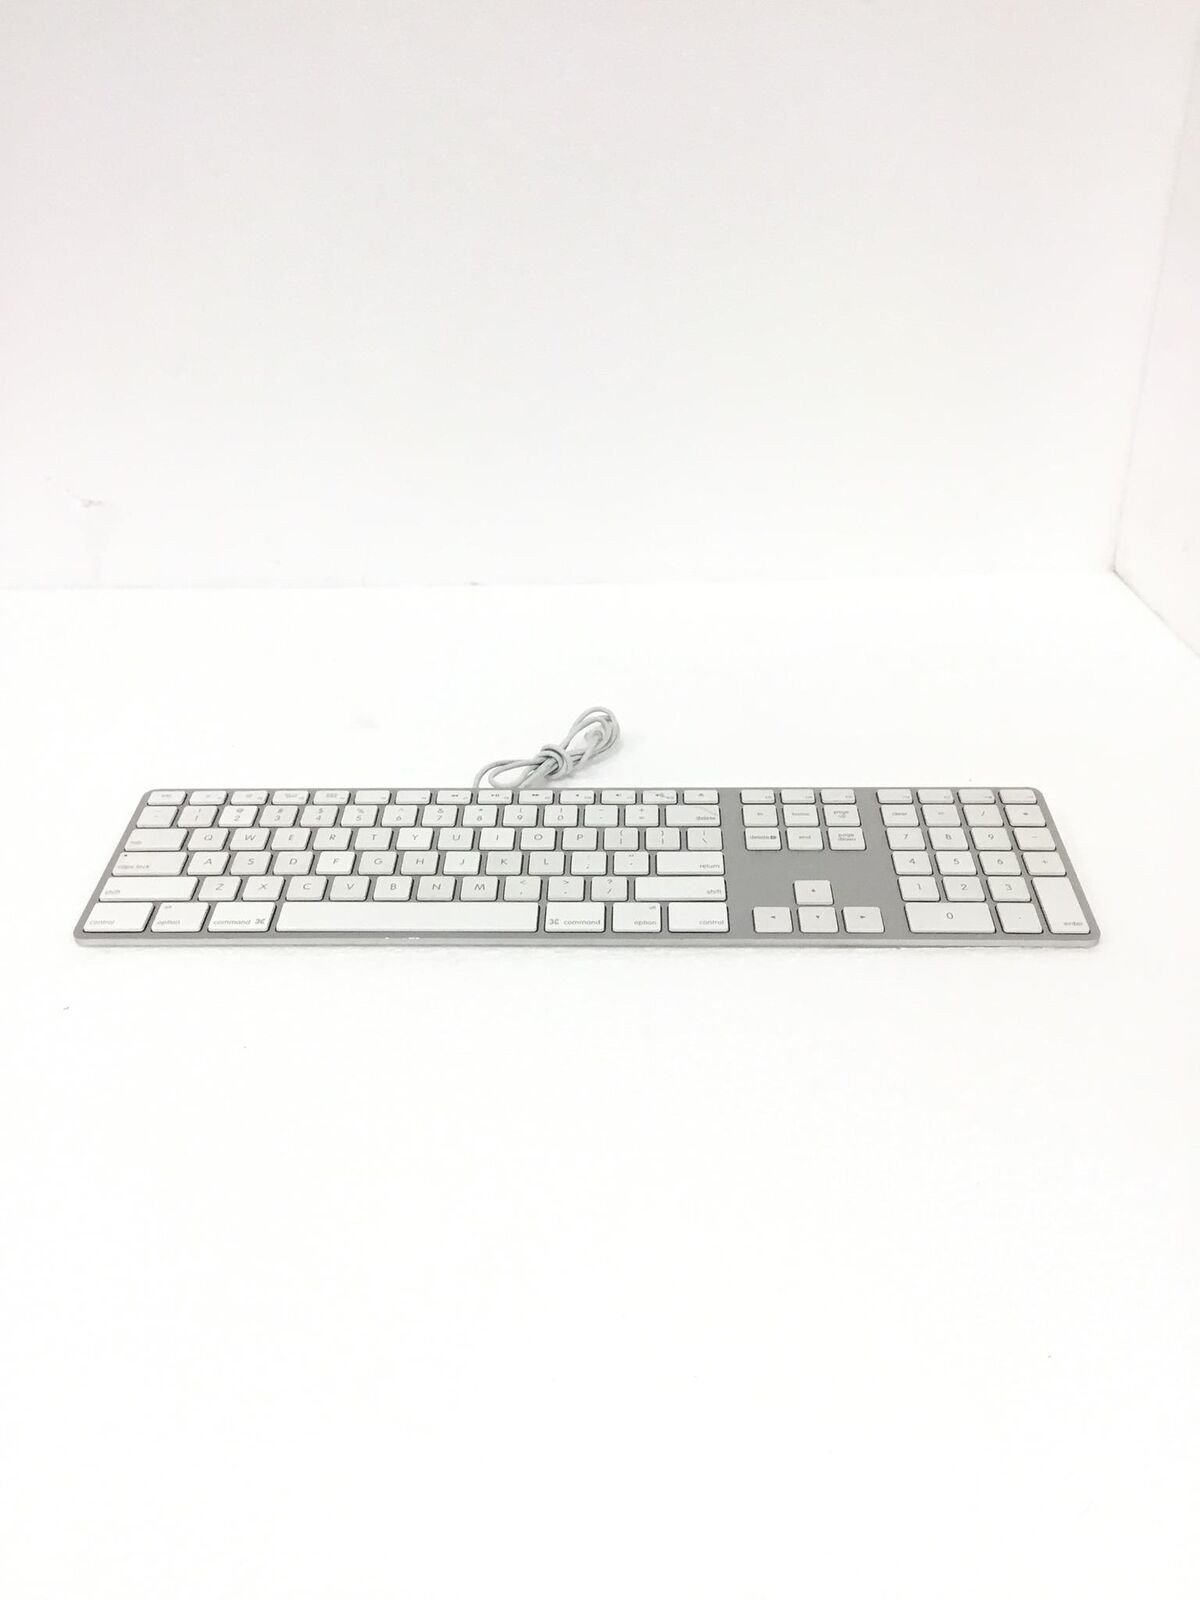 Apple White Aluminum USB Wired Keyboard iMAC G3 G4 G5 eMAC A1243 Slim Mac QTY